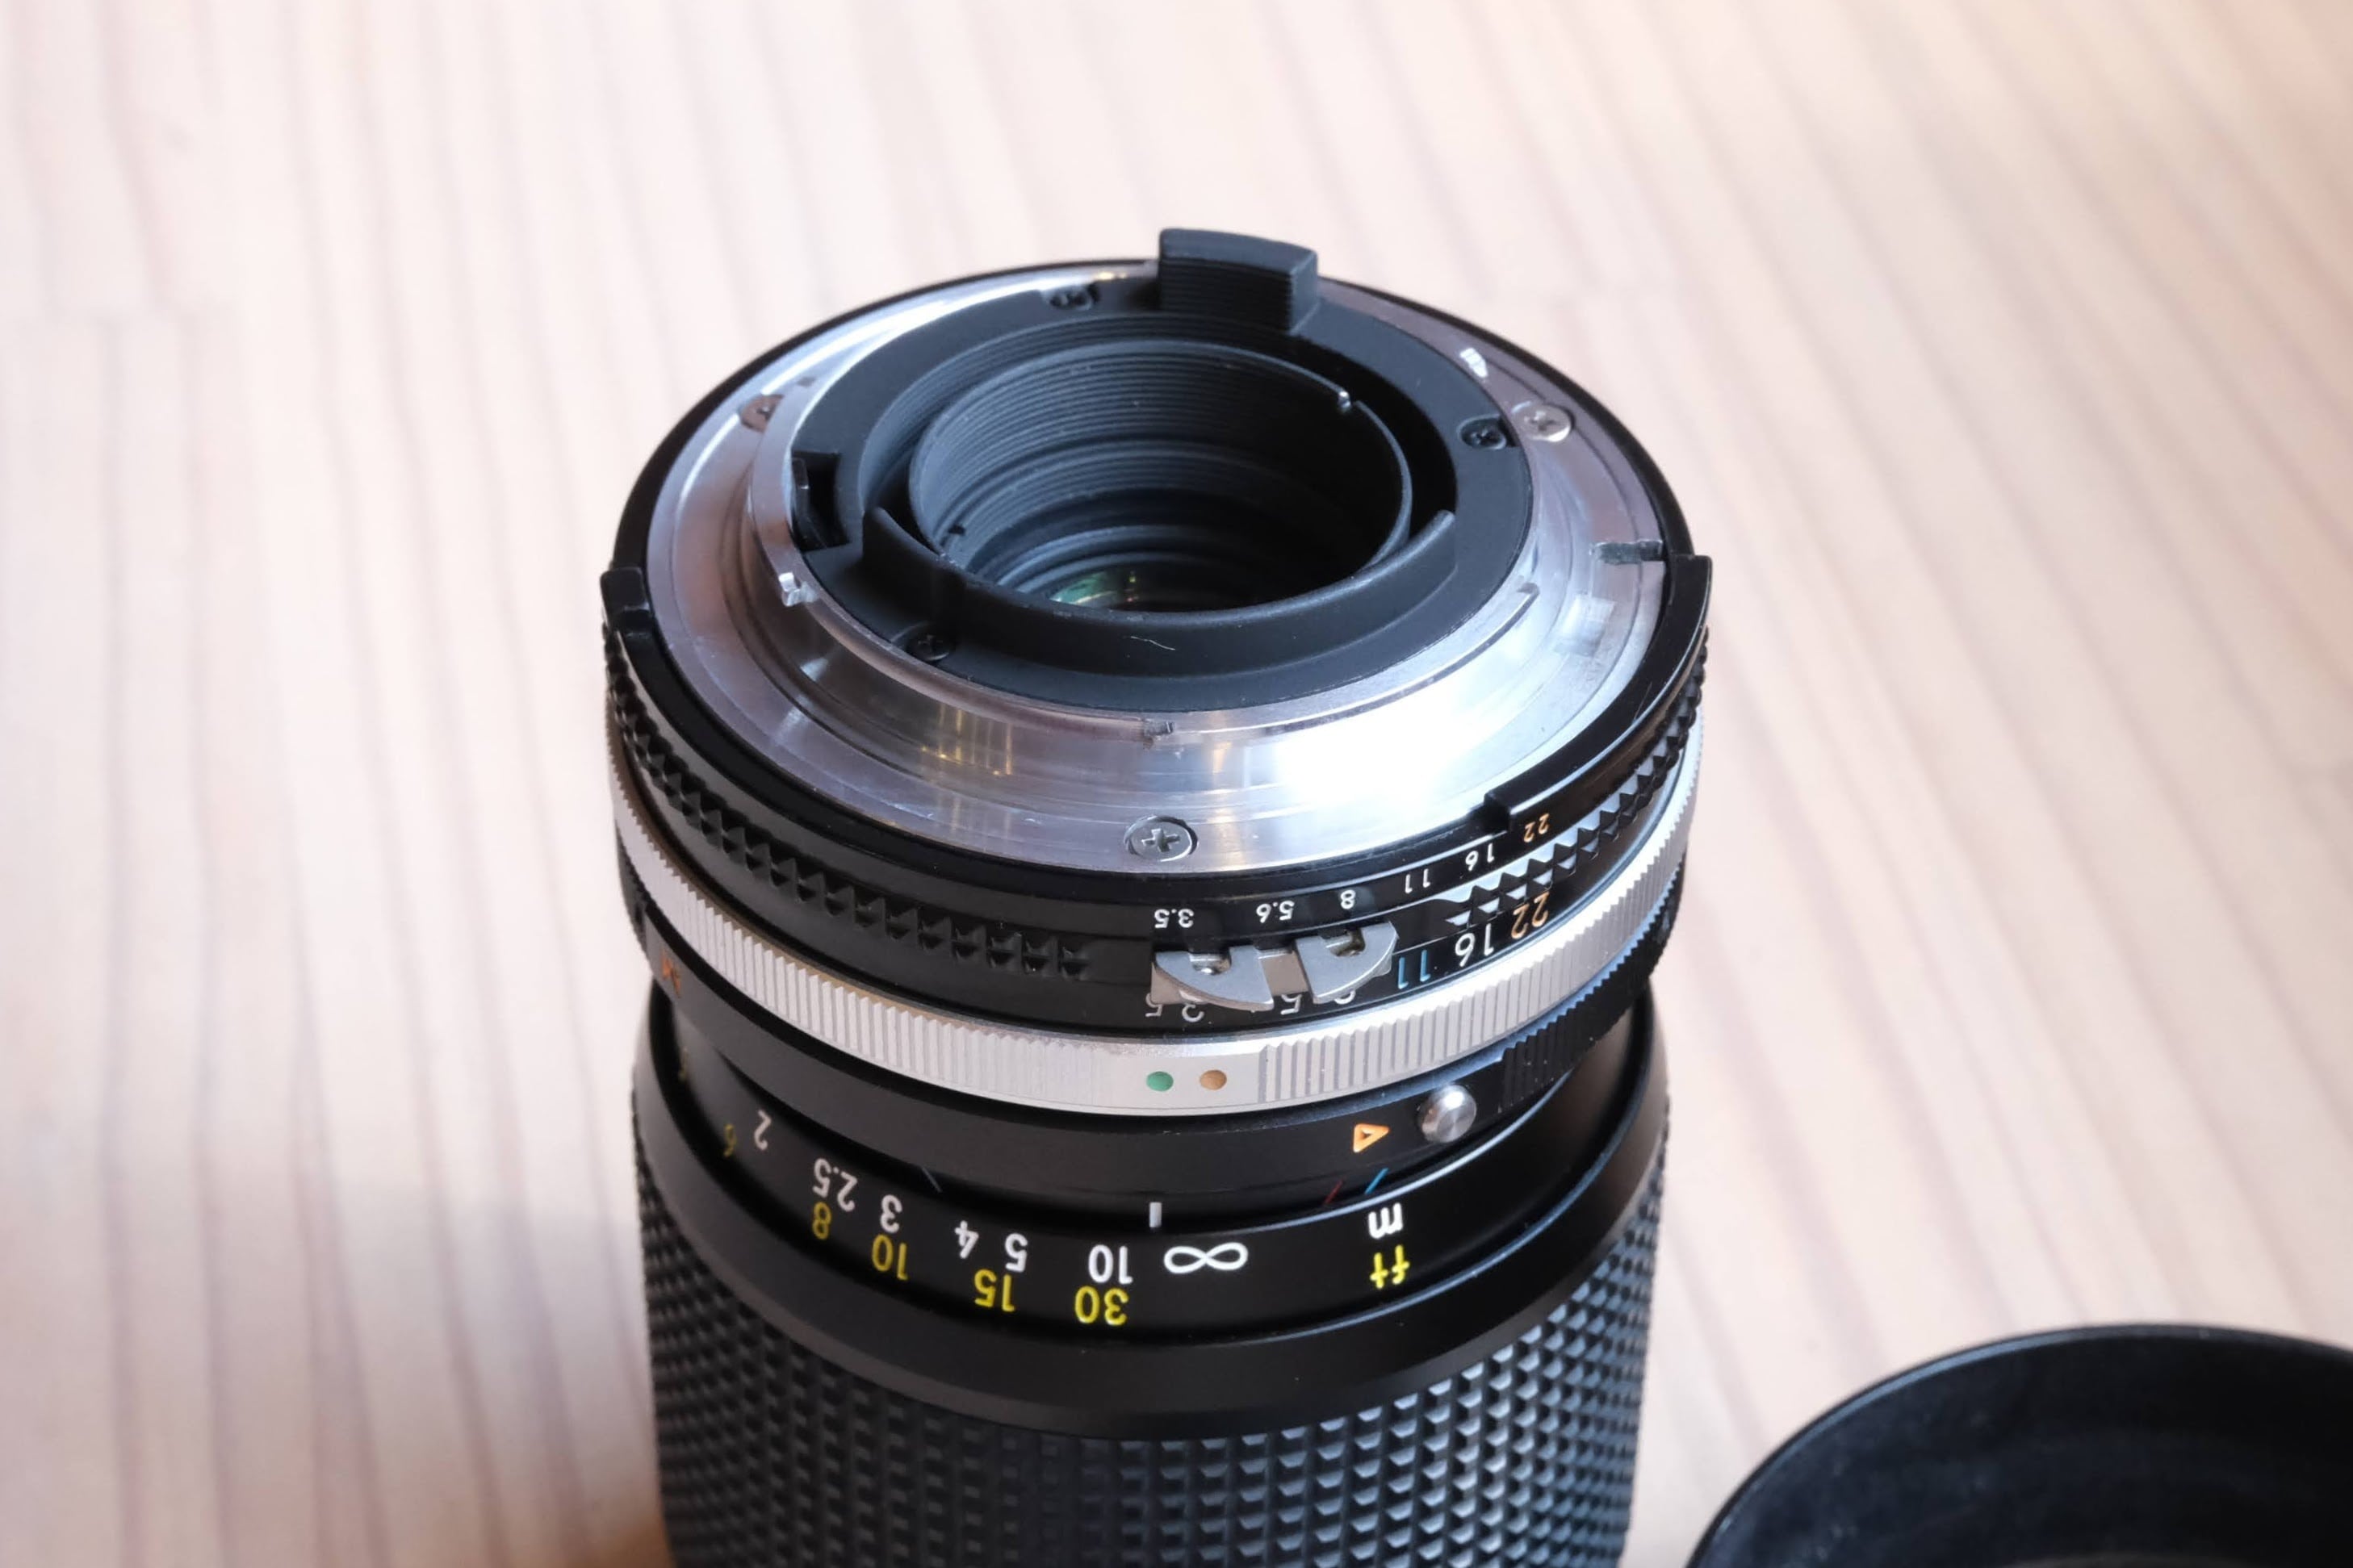 Nikon FA　Ai Nikkor 35-105mm S レンズセット